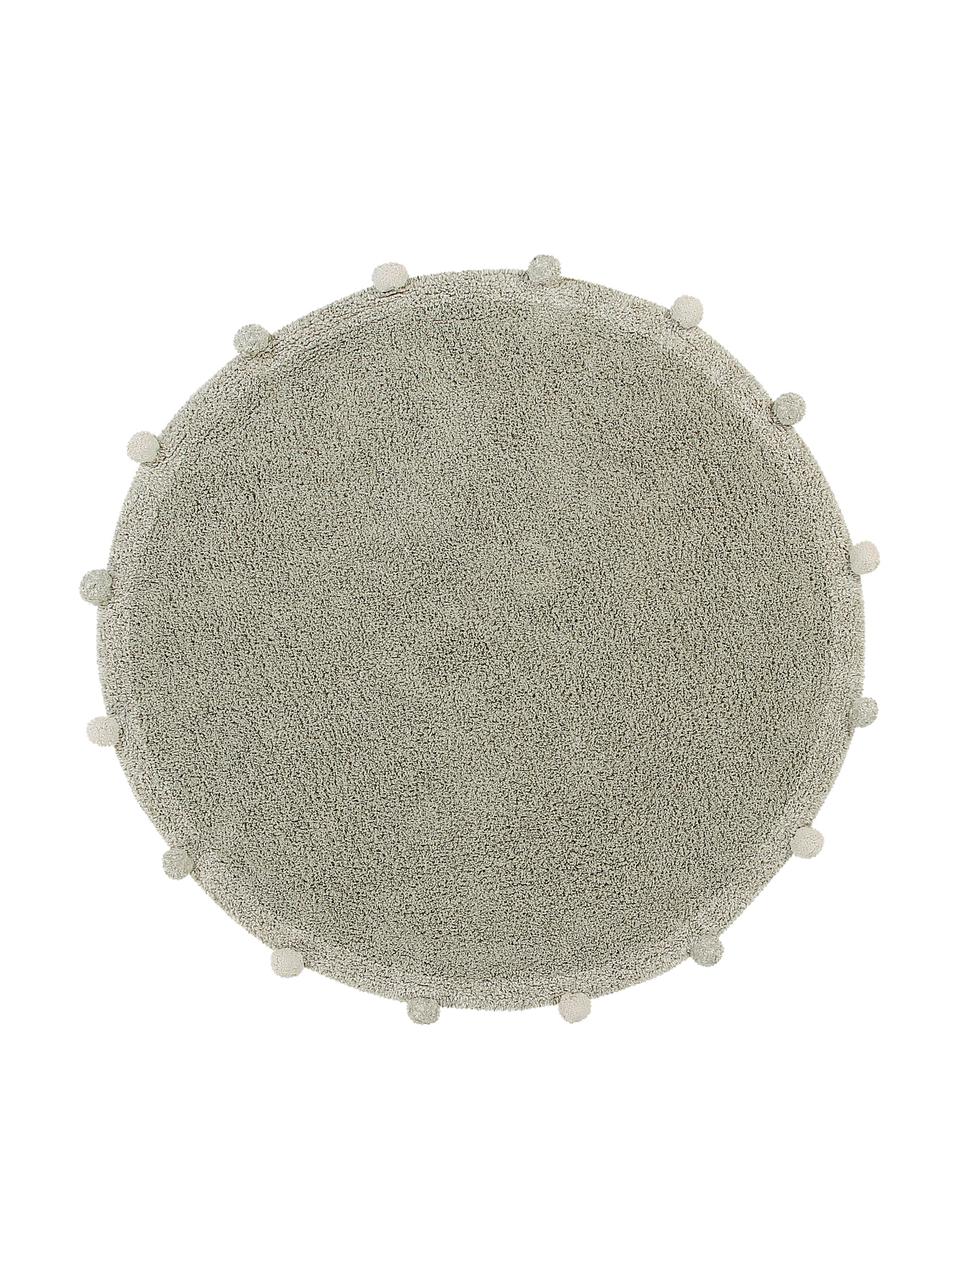 Tappeto rotondo lavabile fatto a mano Bubbly, 97% cotone riciclato, 3% altre fibre
Oeko-Tex Standard 100, Verde, color crema, Ø 120 cm